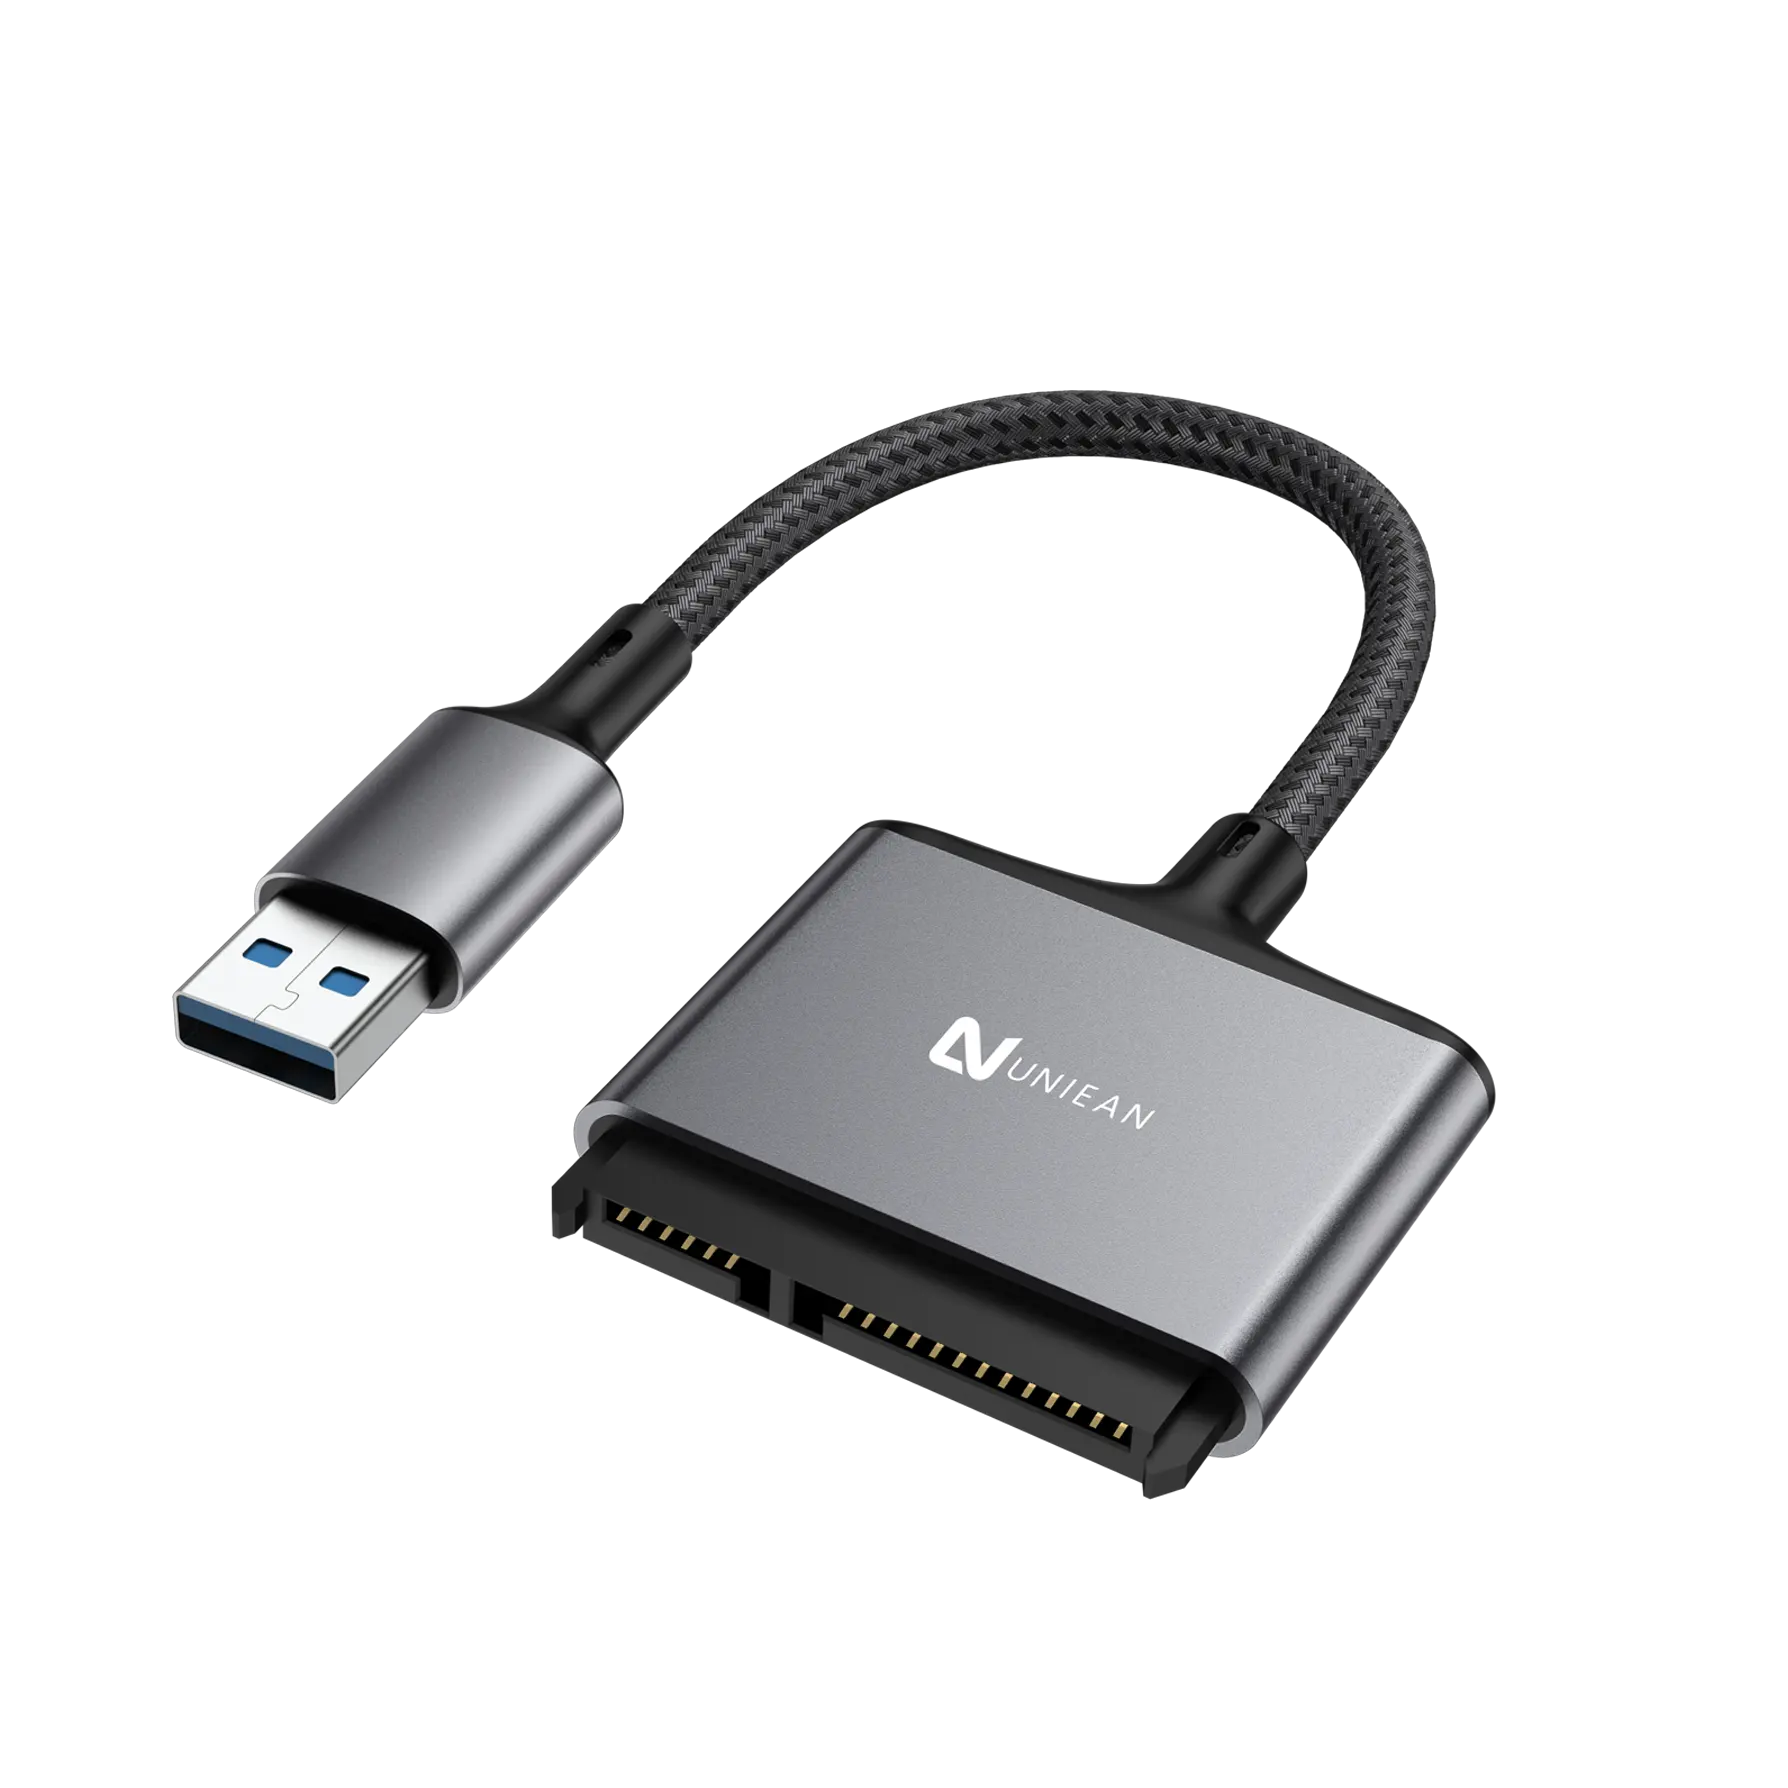 Câble convertisseur externe UNIEAN pour ordinateur portable Usb 3.0 vers Sata pour lecteurs Sata 2.5 "adaptateur de disque dur externe câble Usb3.0 vers Sata 2.5